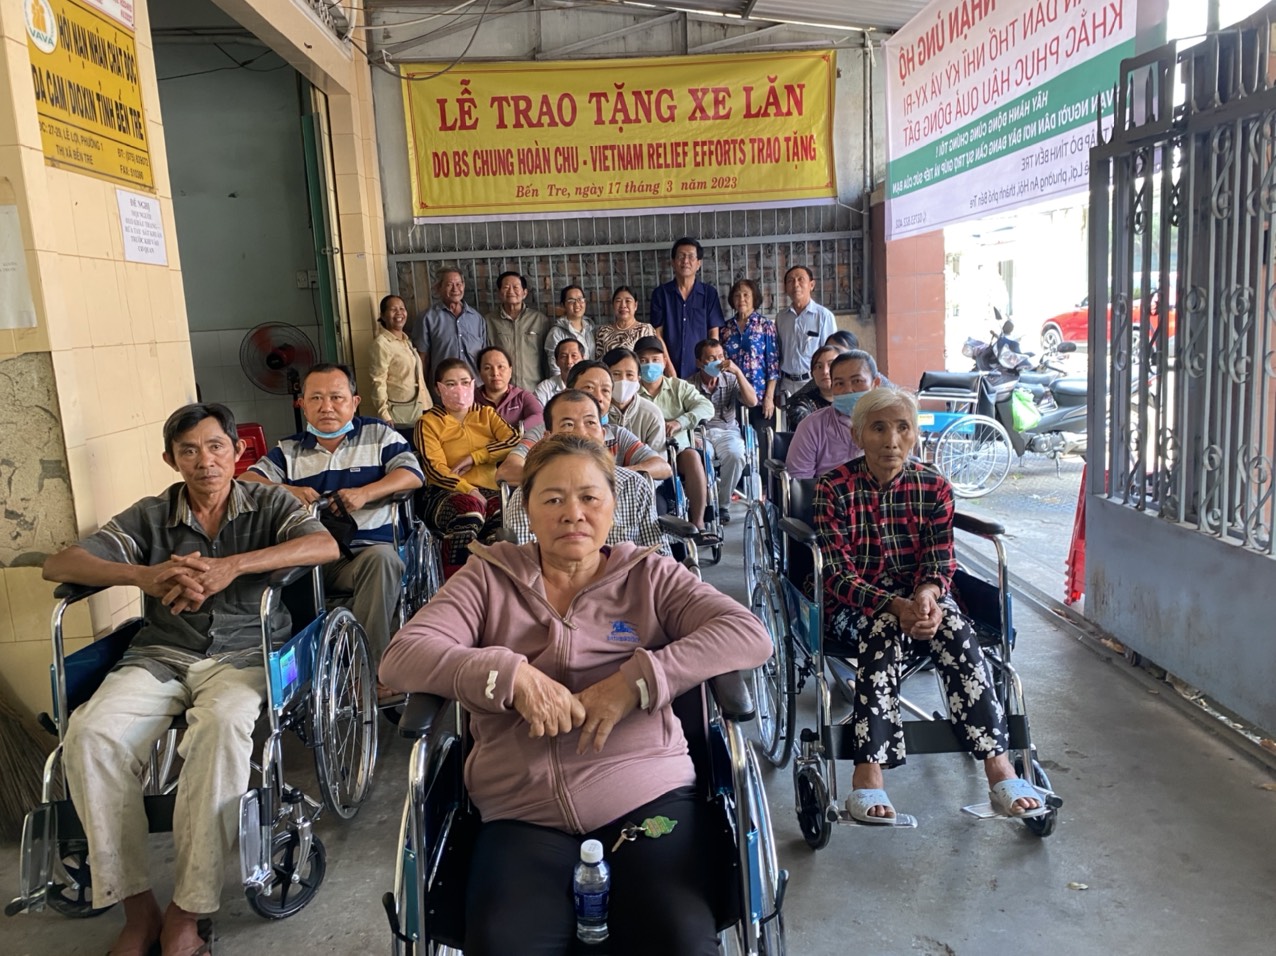 Hội NNCĐDC/dioxin- BVQTE tỉnh Bến Tre tổ chức trao 20 xe lăn cho NNCĐDC, người khuyết tật